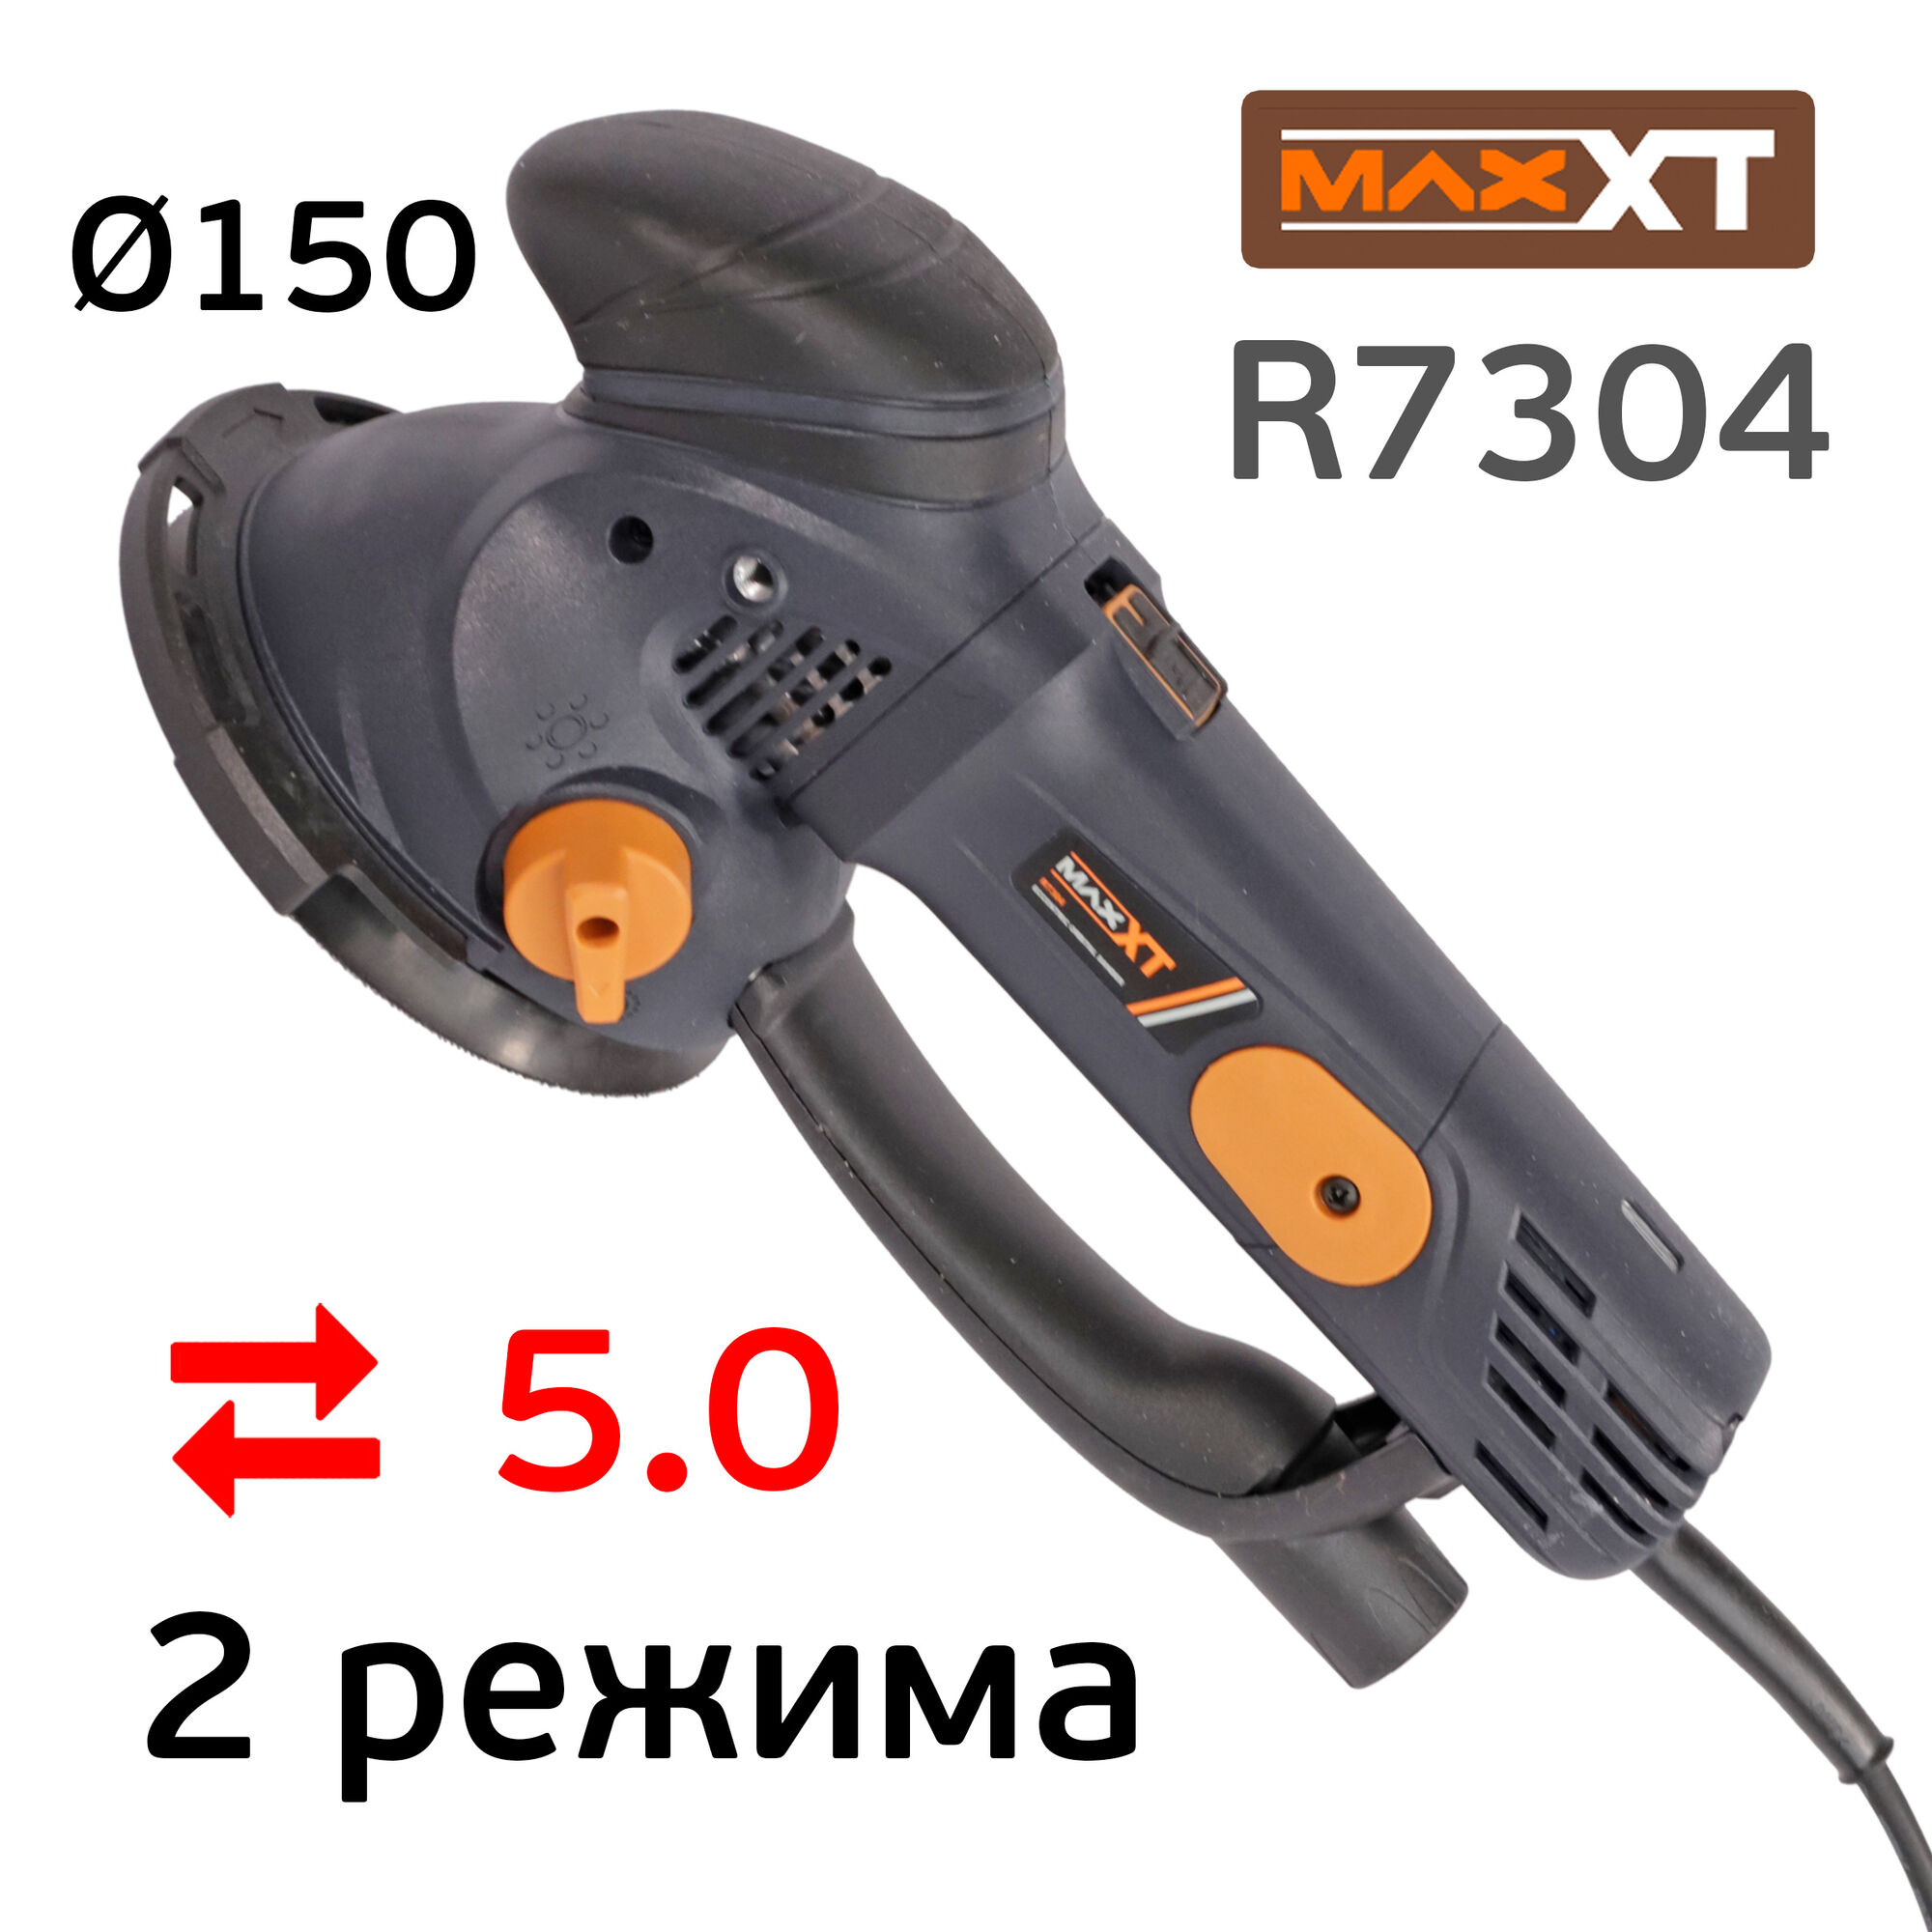 Шлифовальная машинка MAXXT R7304 (150мм) два режима шлифования: планетарная + орбитальная, электро